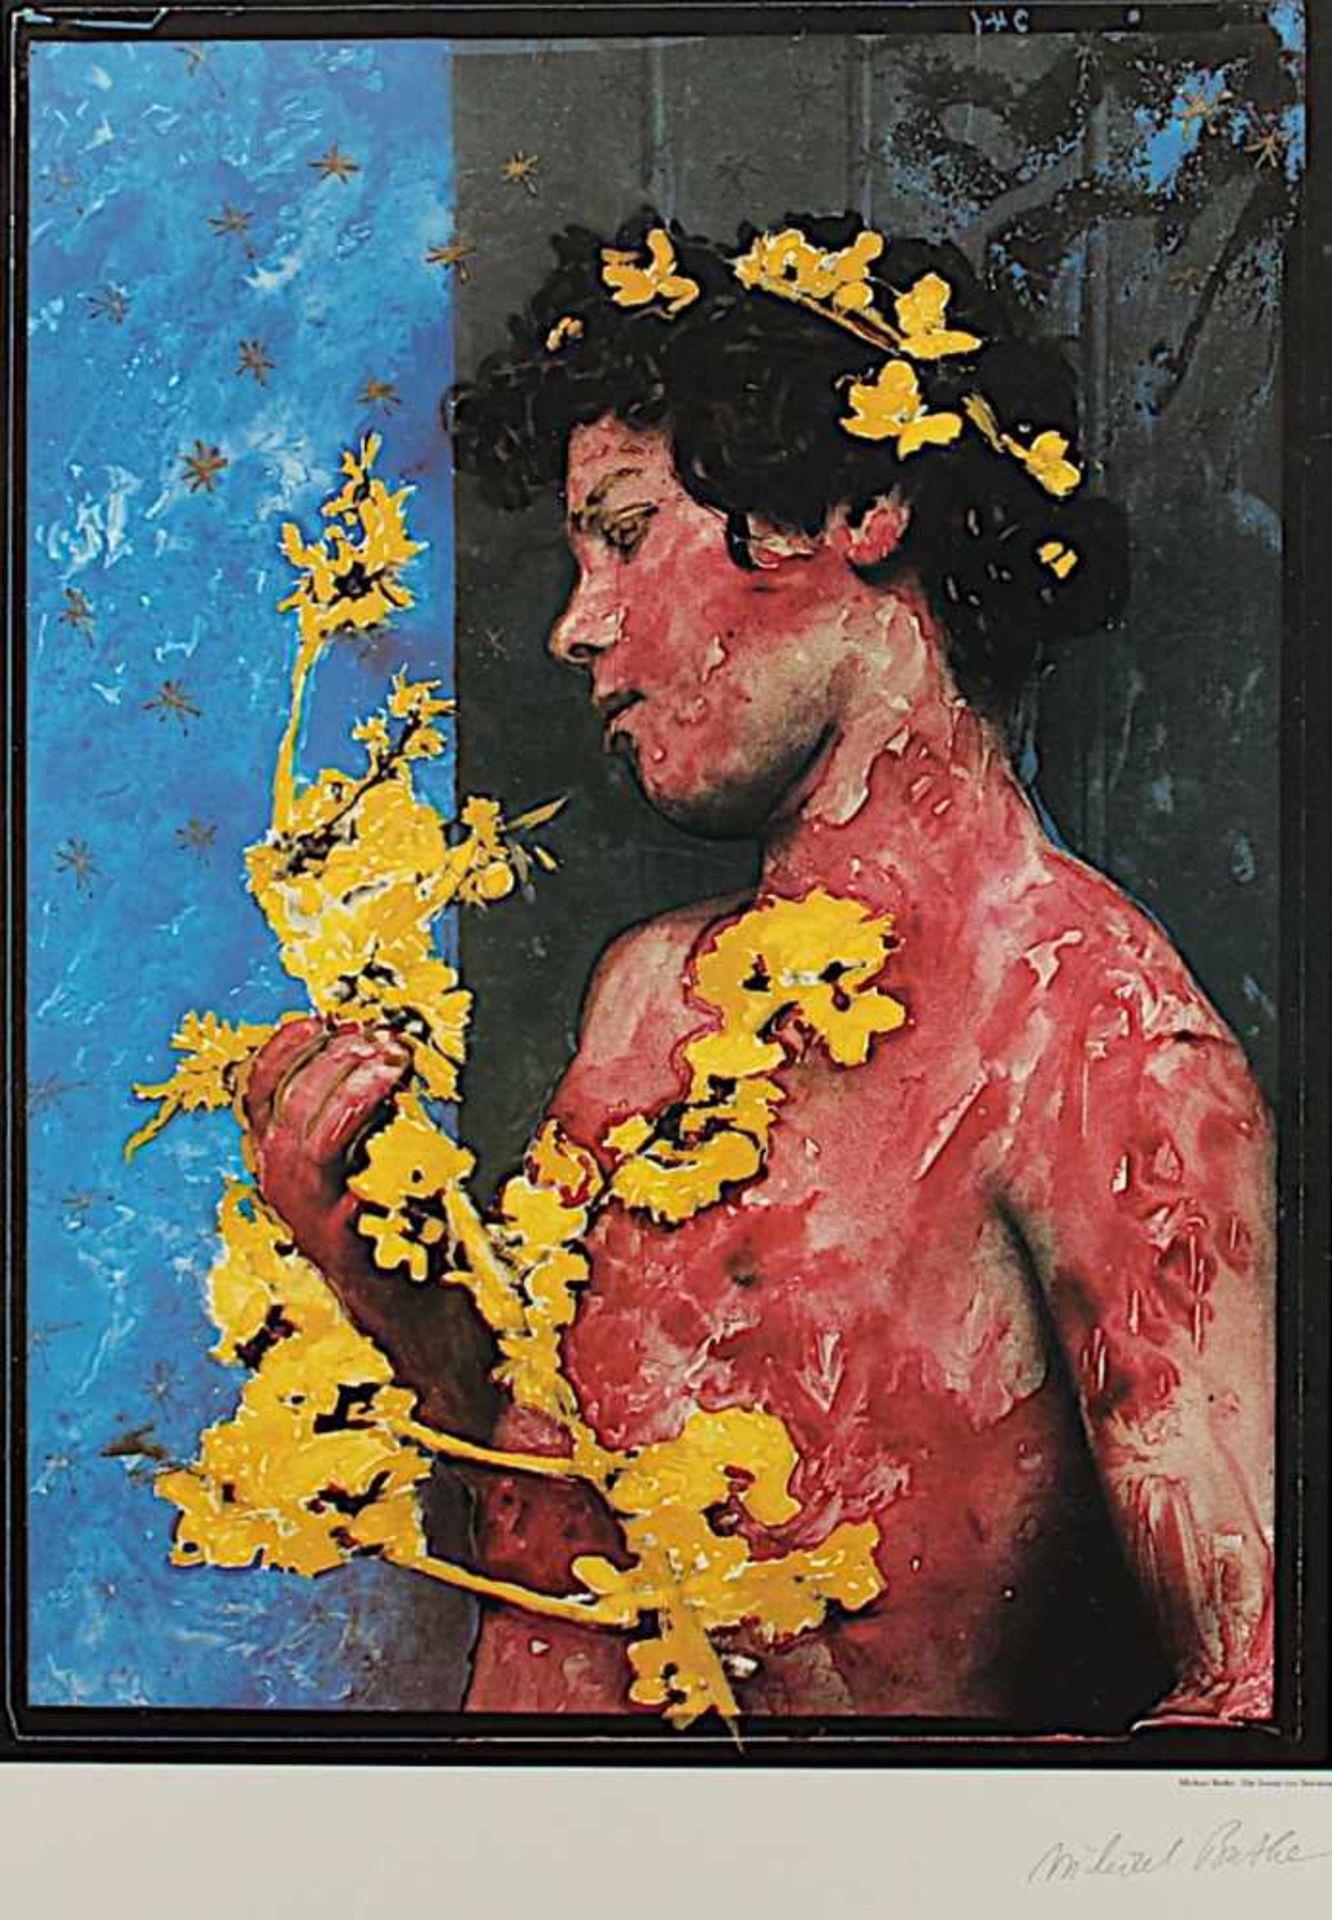 BUTHE, Michael, "Die Sonne von Taormina", Plakat, Farboffset, 58 x 44, handsigniert, R.